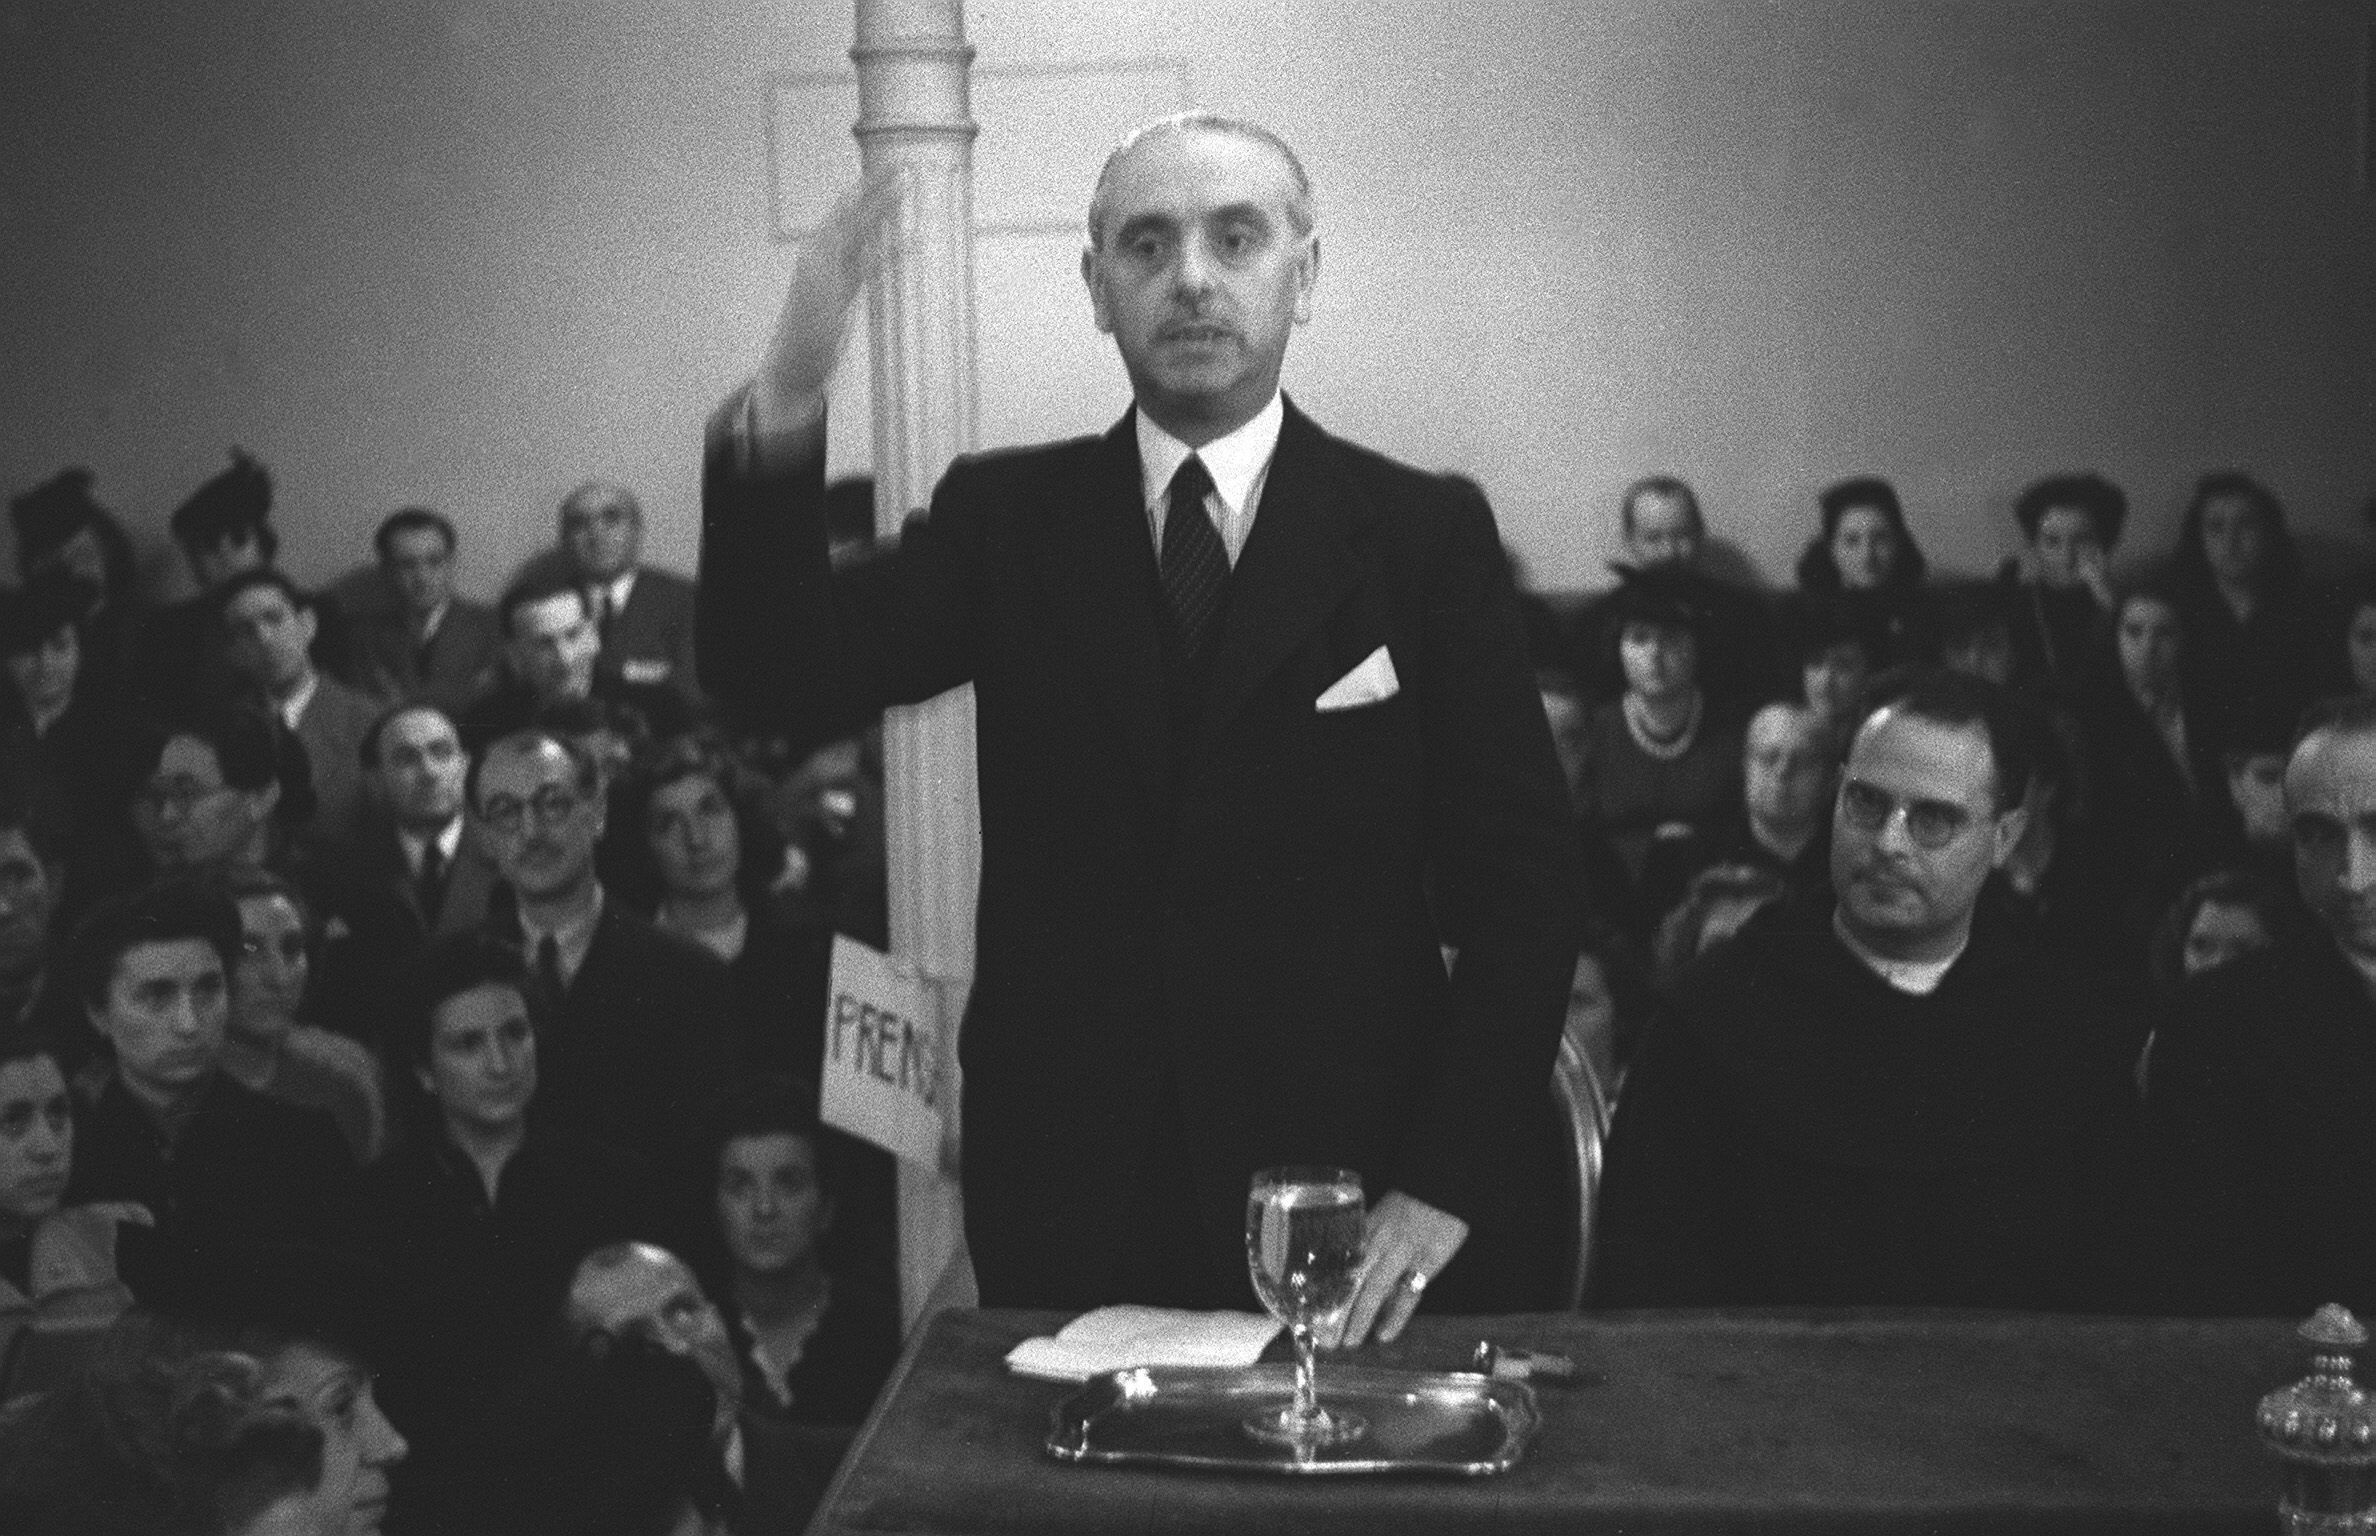 El escritor y académico José María Pemán, en una de sus intervenciones públicas en 1942.